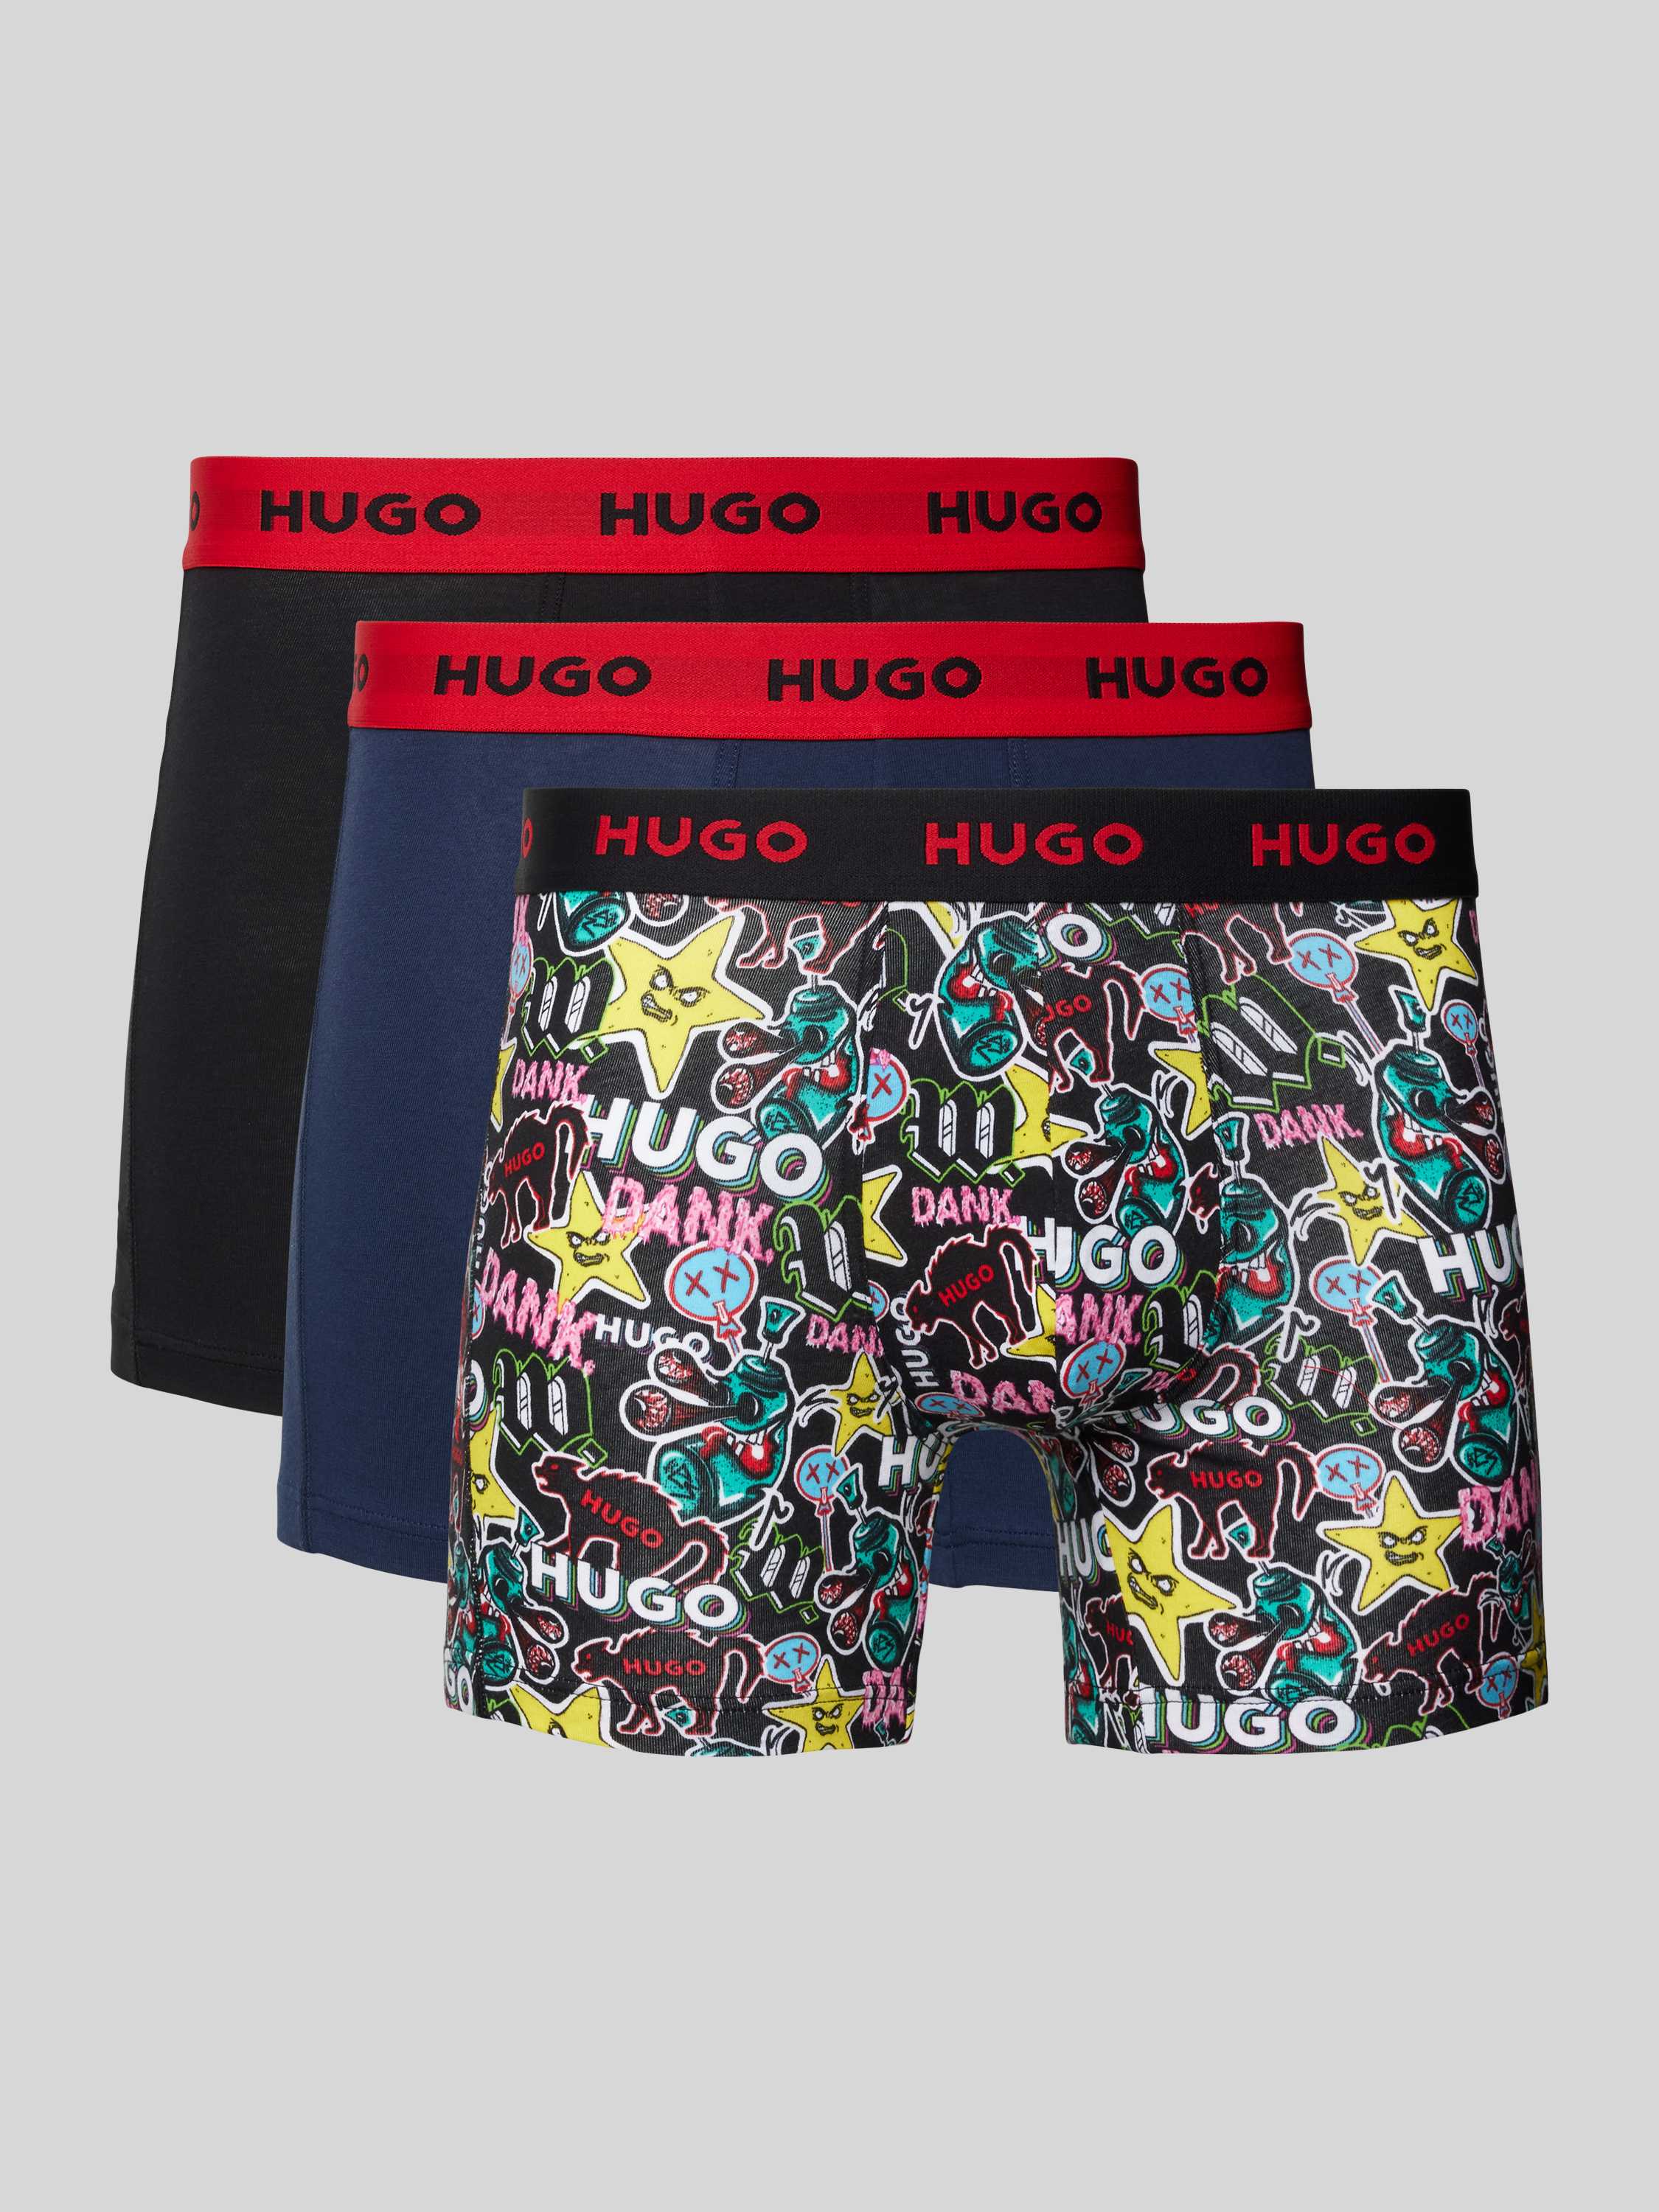 HUGO Boxershort met elastische band met logo in een set van 3 stuks